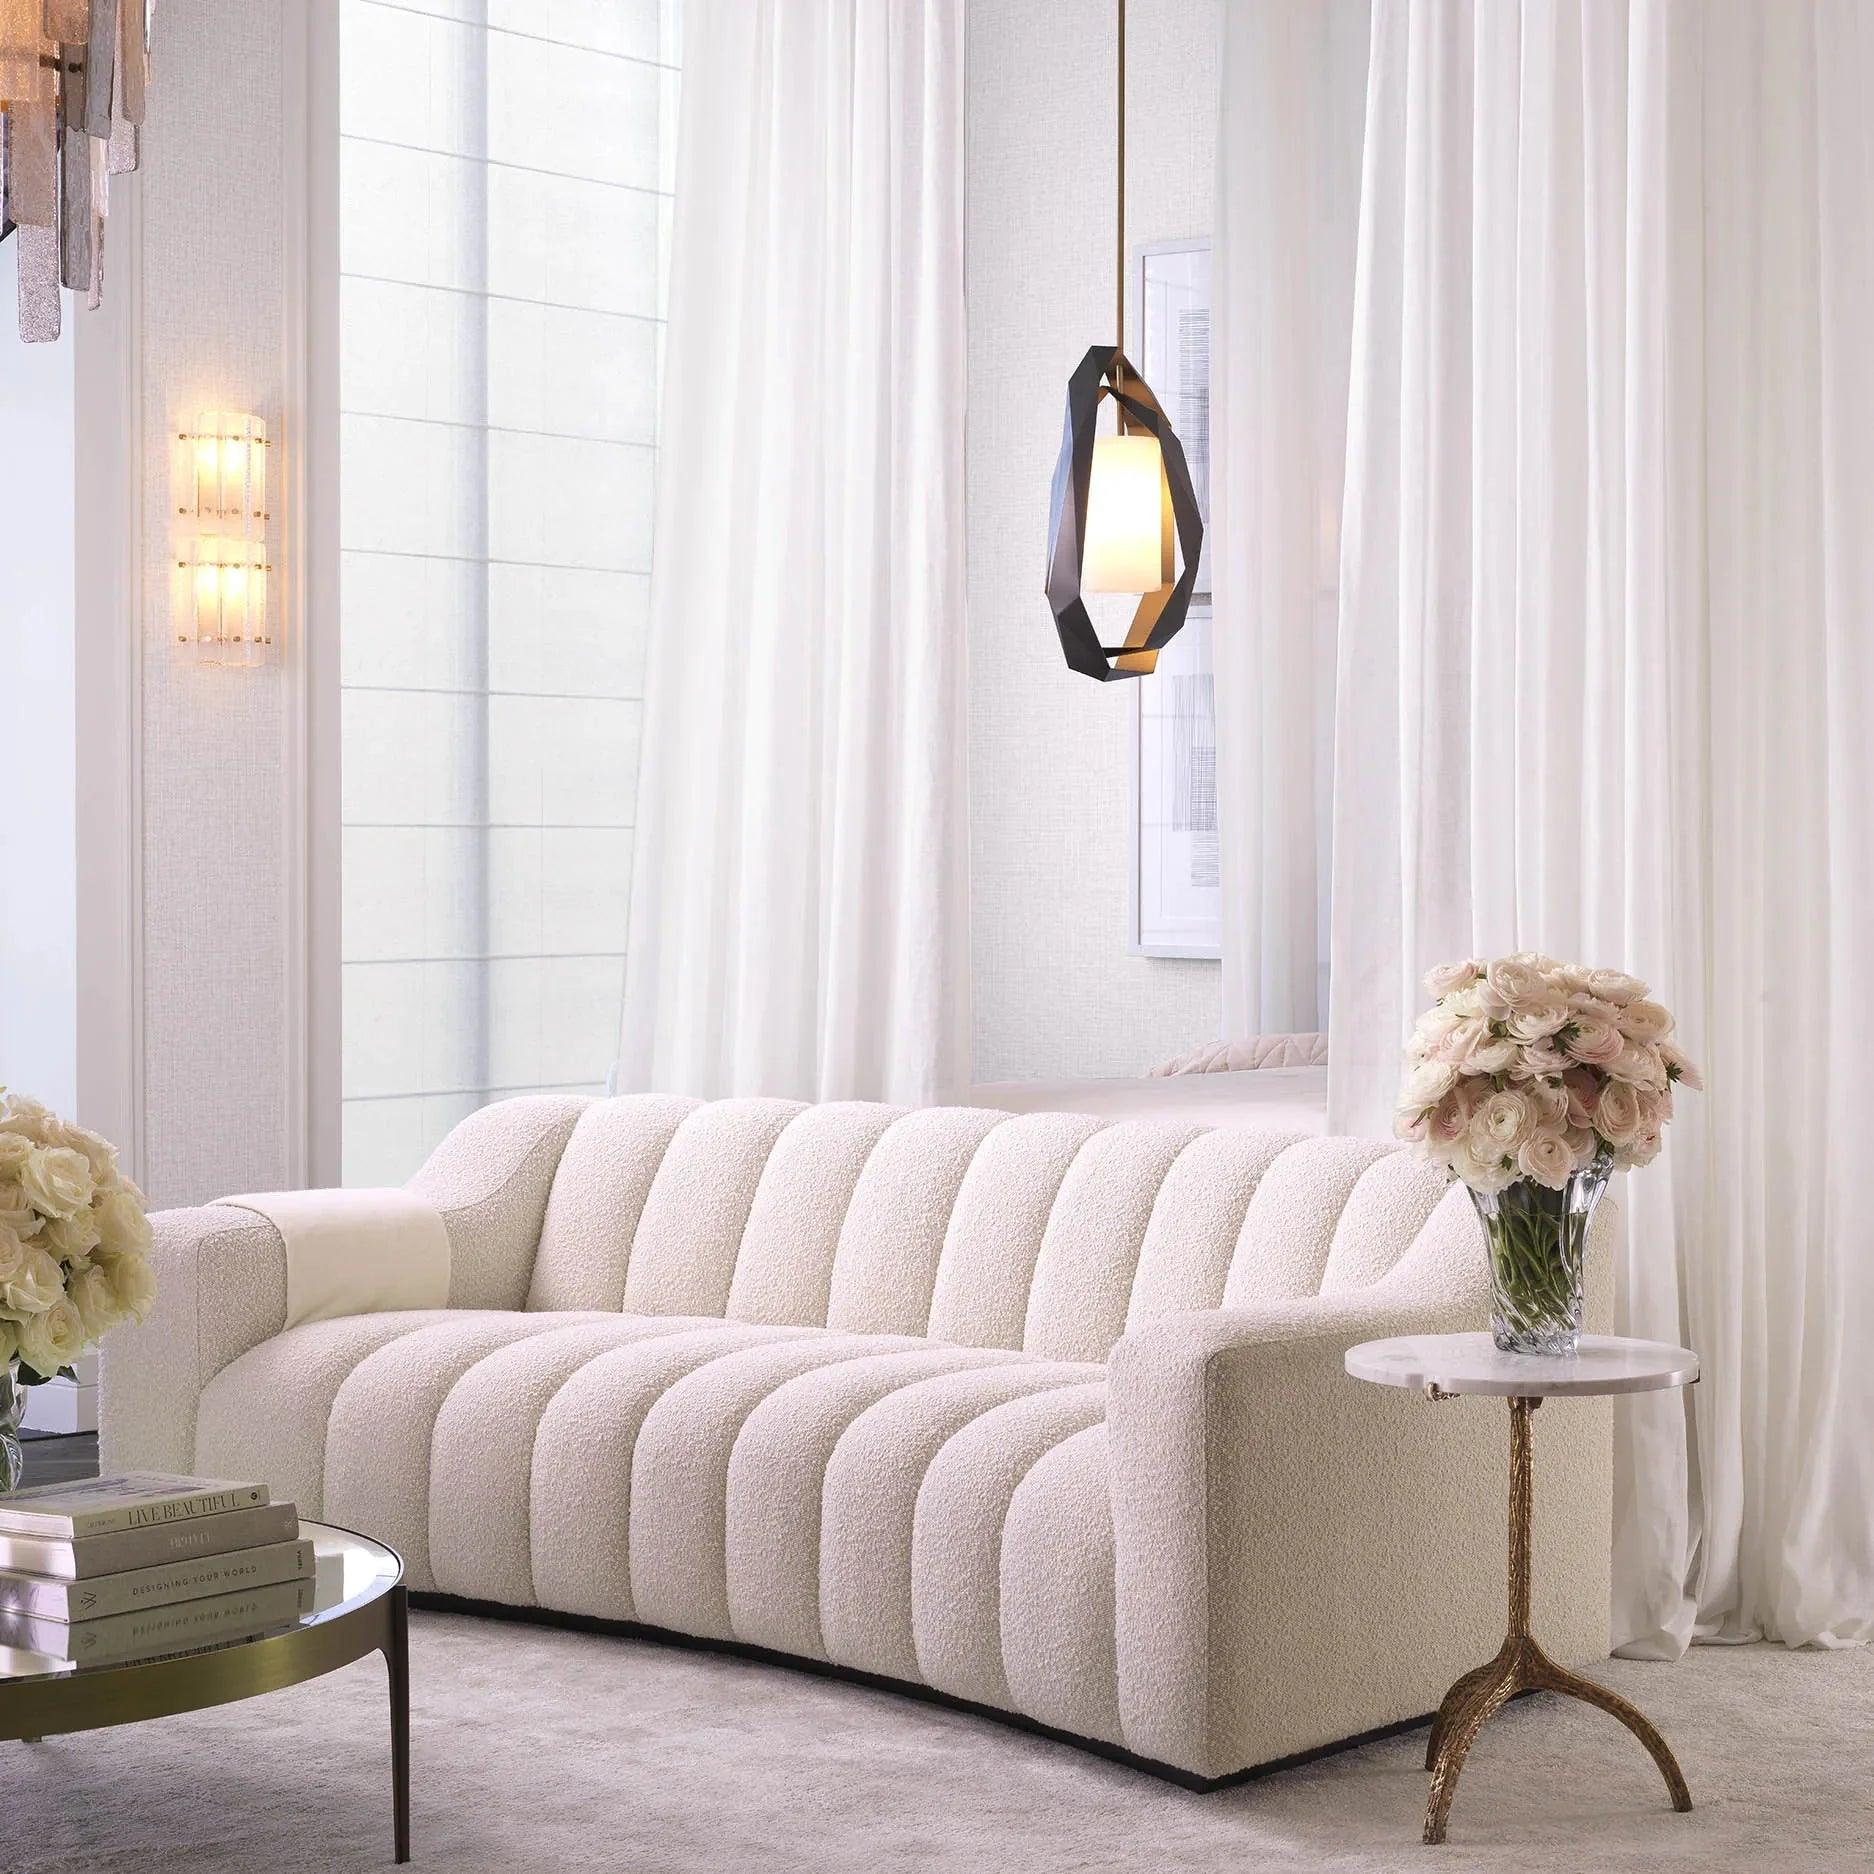 Sofa w tkaninie boucle KELLY kremowy - poekspozycyjna Eichholtz    Eye on Design